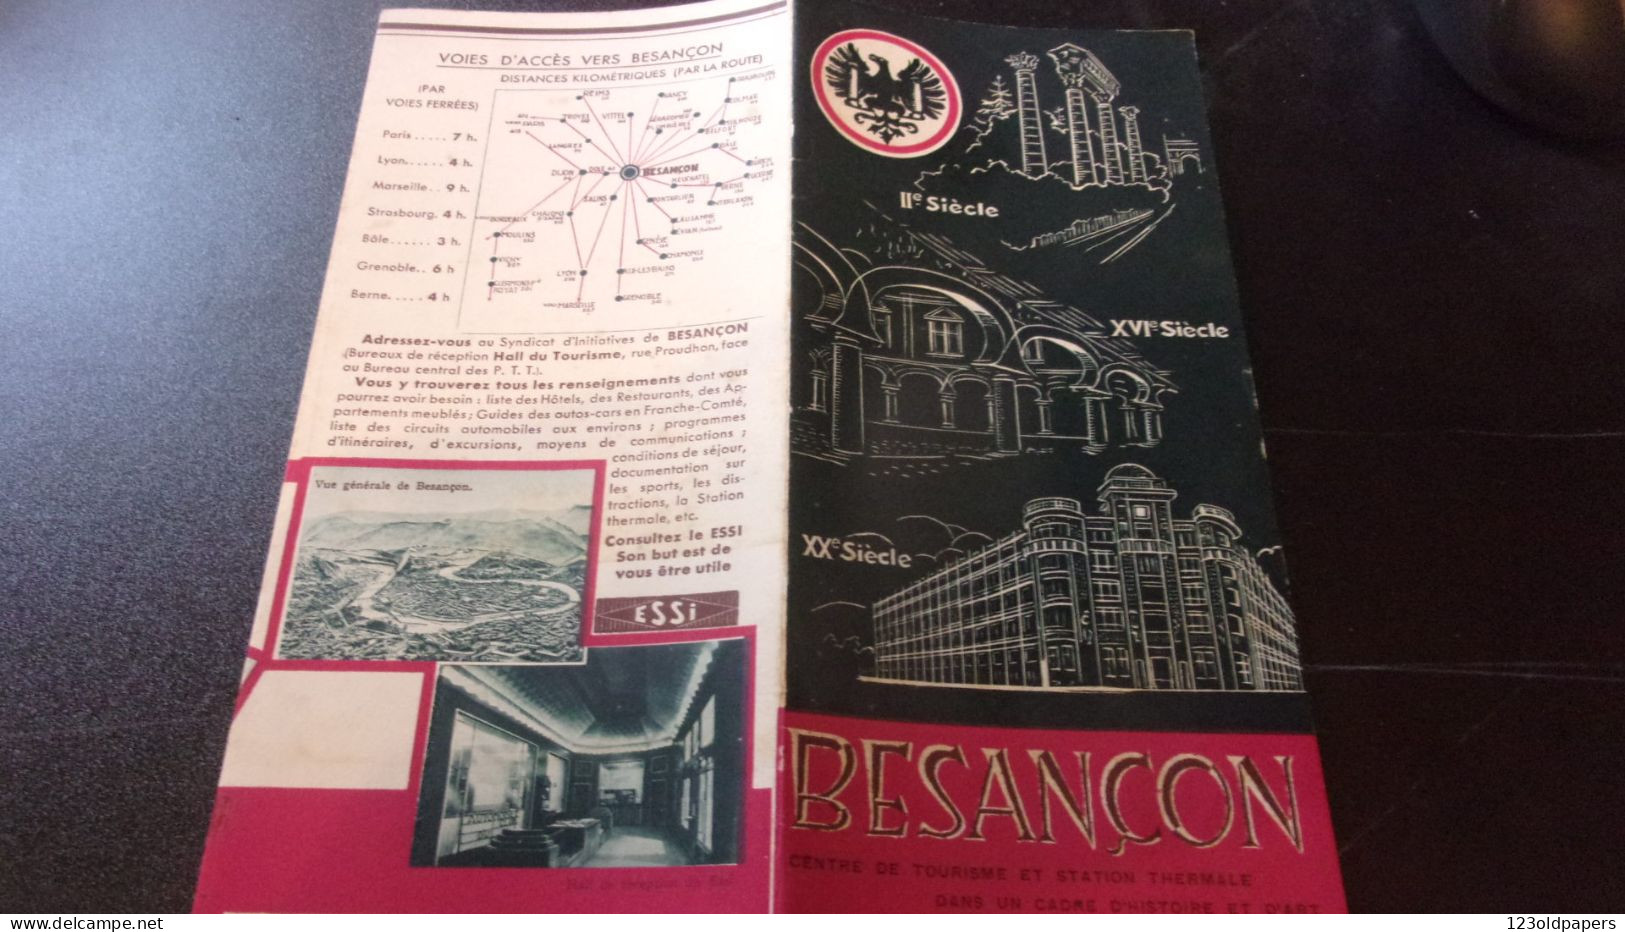 25 - BESANCON - DEPLIANT TOURISTIQUE - Tourism Brochures